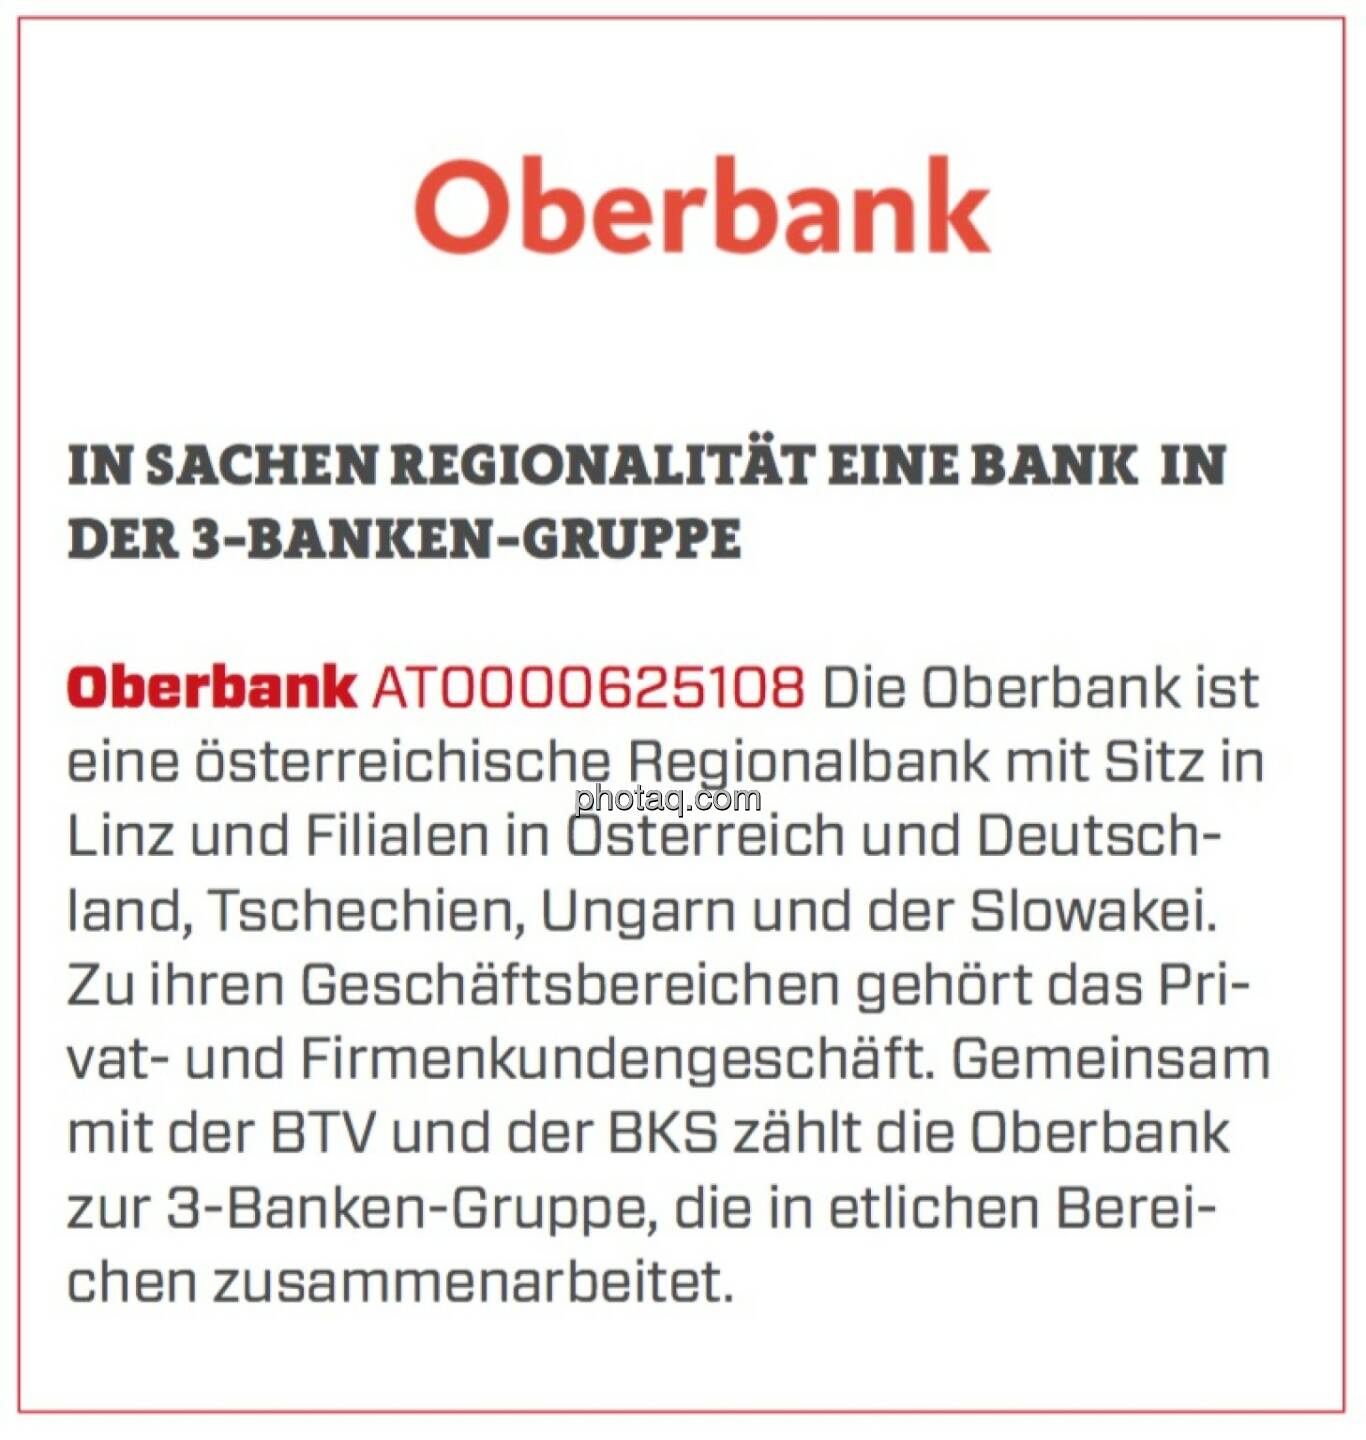 Oberbank - In Sachen Regionalität eine Bank in der 3-Banken-Gruppe: Die Oberbank ist eine österreichische Regionalbank mit Sitz in Linz und Filialen in Österreich und Deutschland, Tschechien, Ungarn und der Slowakei. Zu ihren Geschäftsbereichen gehört das Privat- und Firmenkundengeschäft. Gemeinsam mit der BTV und der BKS zählt die Oberbank zur 3-Banken-Gruppe, die in etlichen Bereichen zusammenarbeitet.